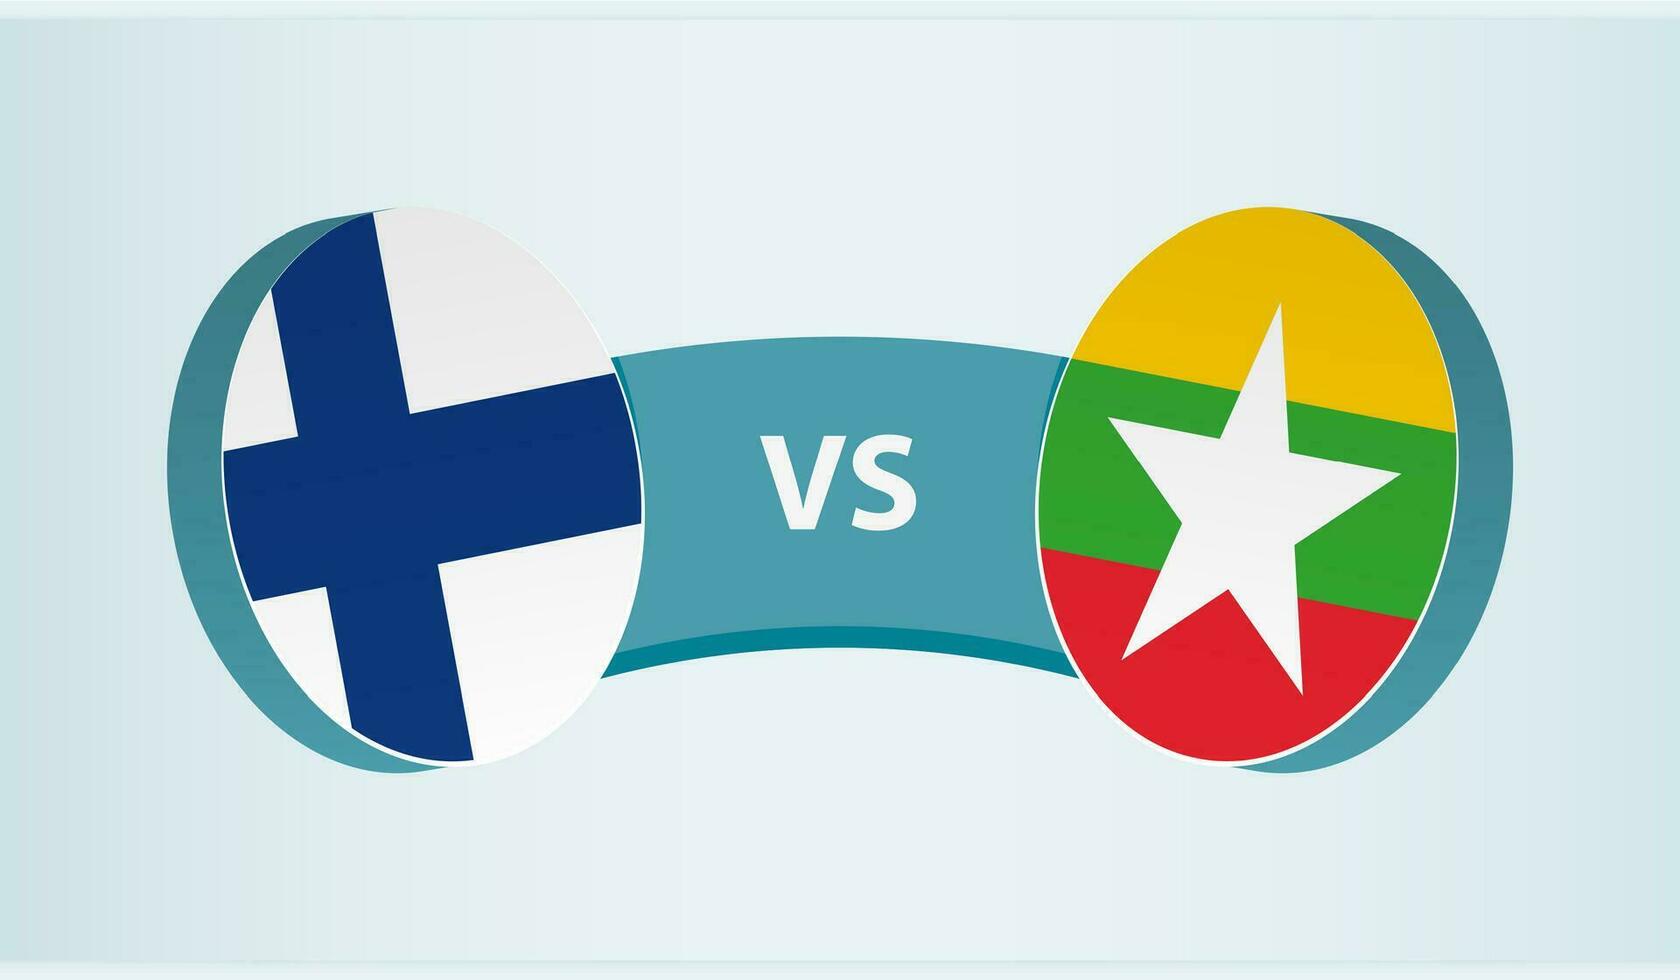 finland mot Myanmar, team sporter konkurrens begrepp. vektor